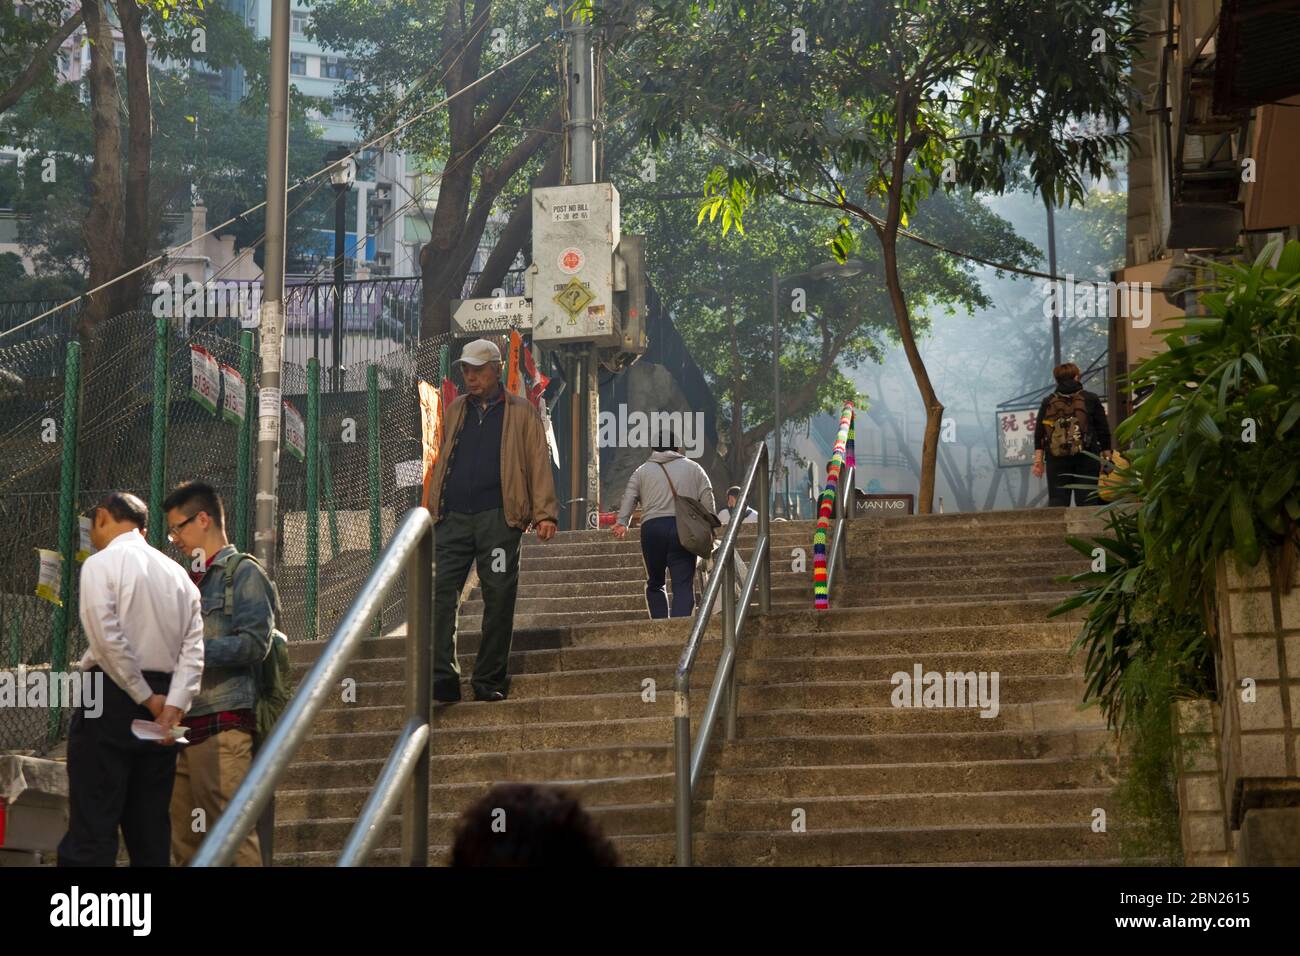 Ehrliche Straßenszene in Hongkong, Treppen, Männer, Bäume Stockfoto